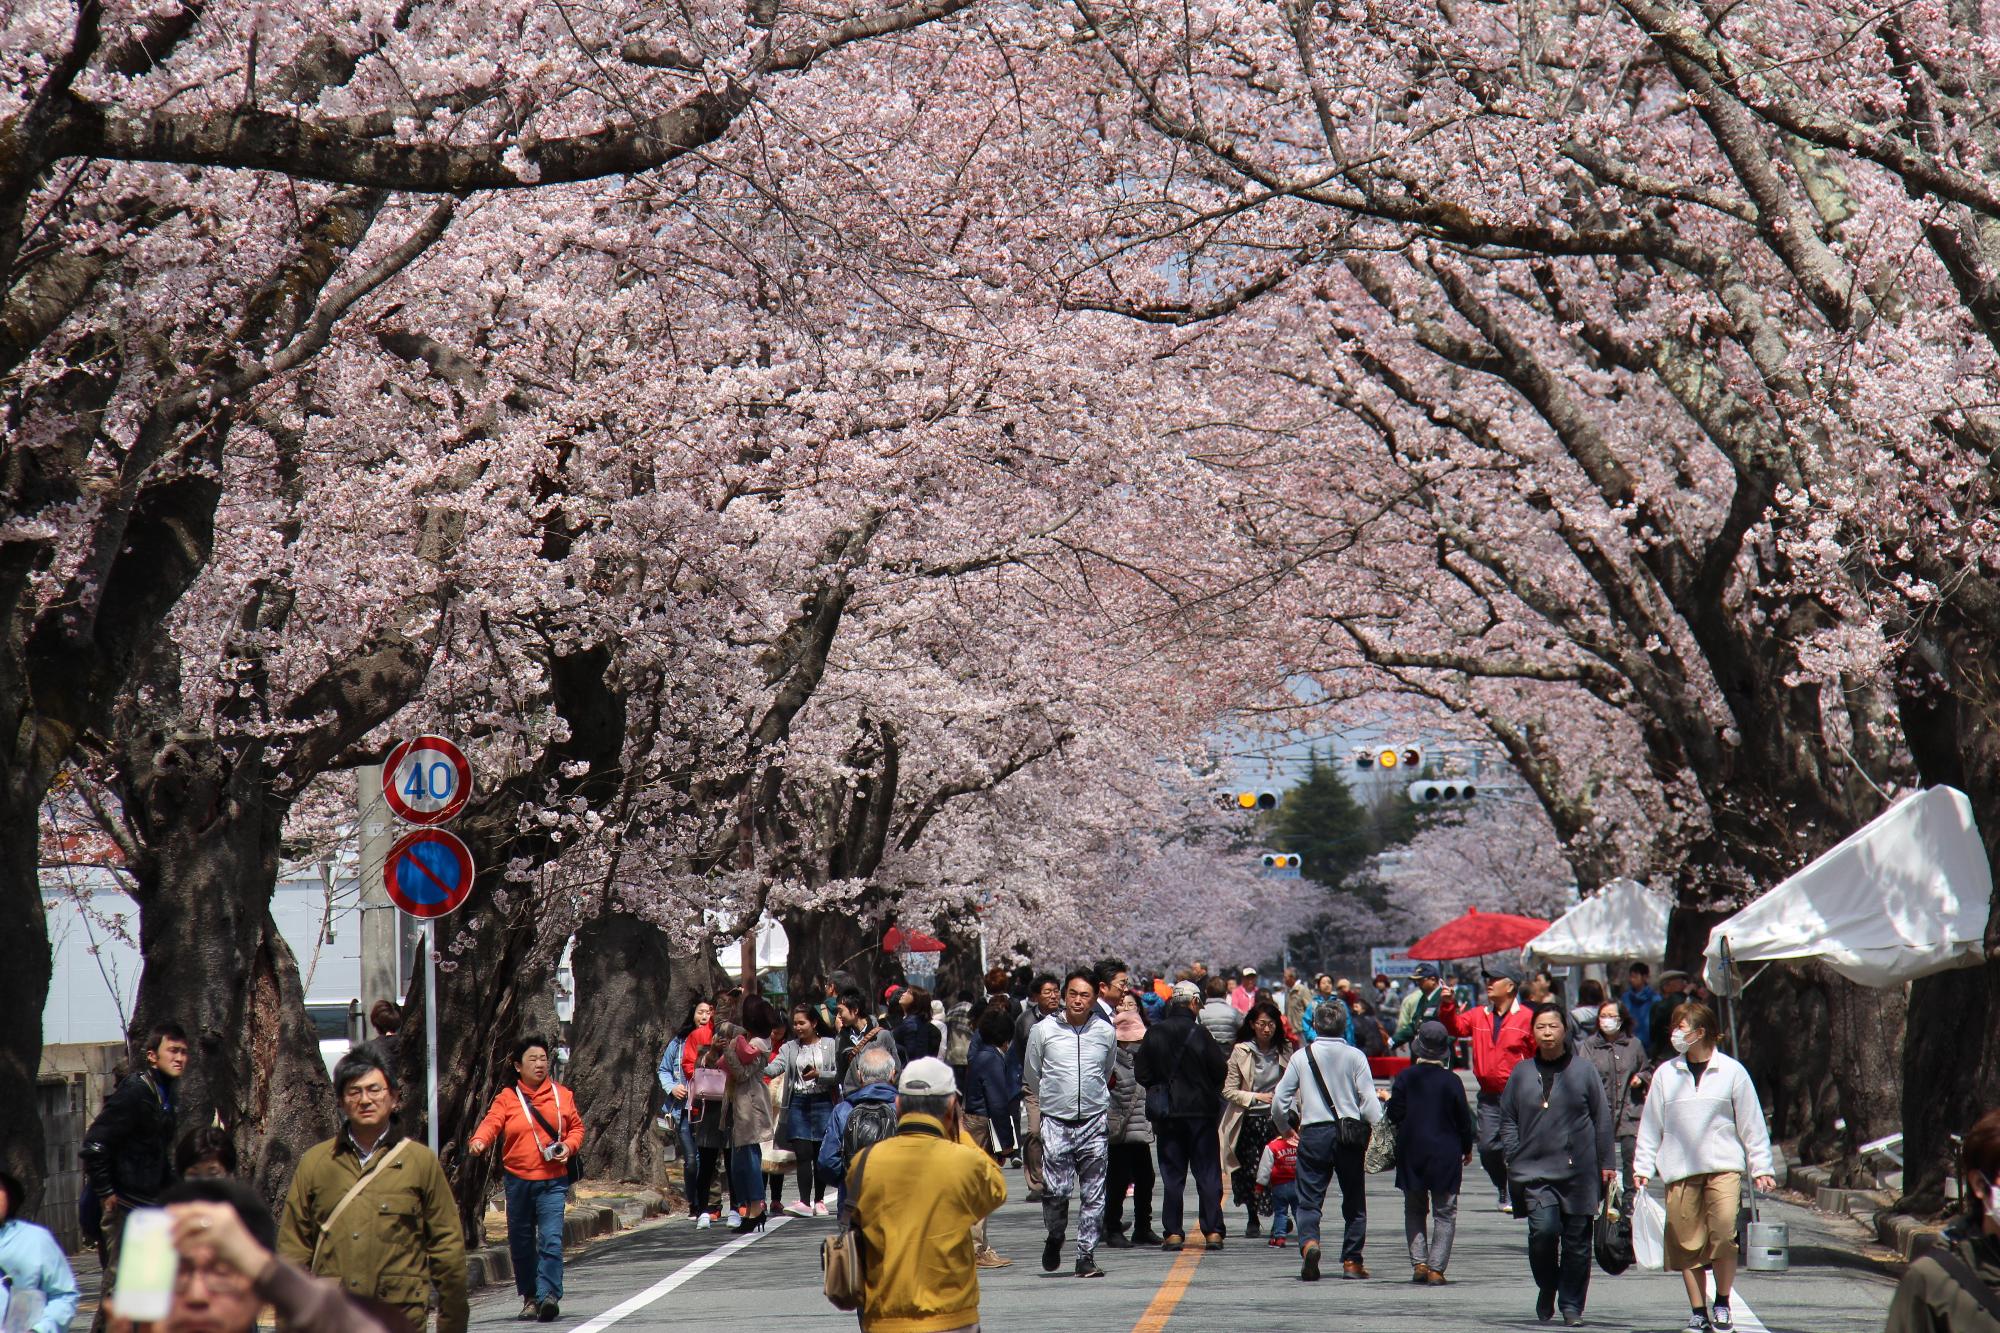 桜のトンネルで多くの人々が歩きながら花見する様子の写真